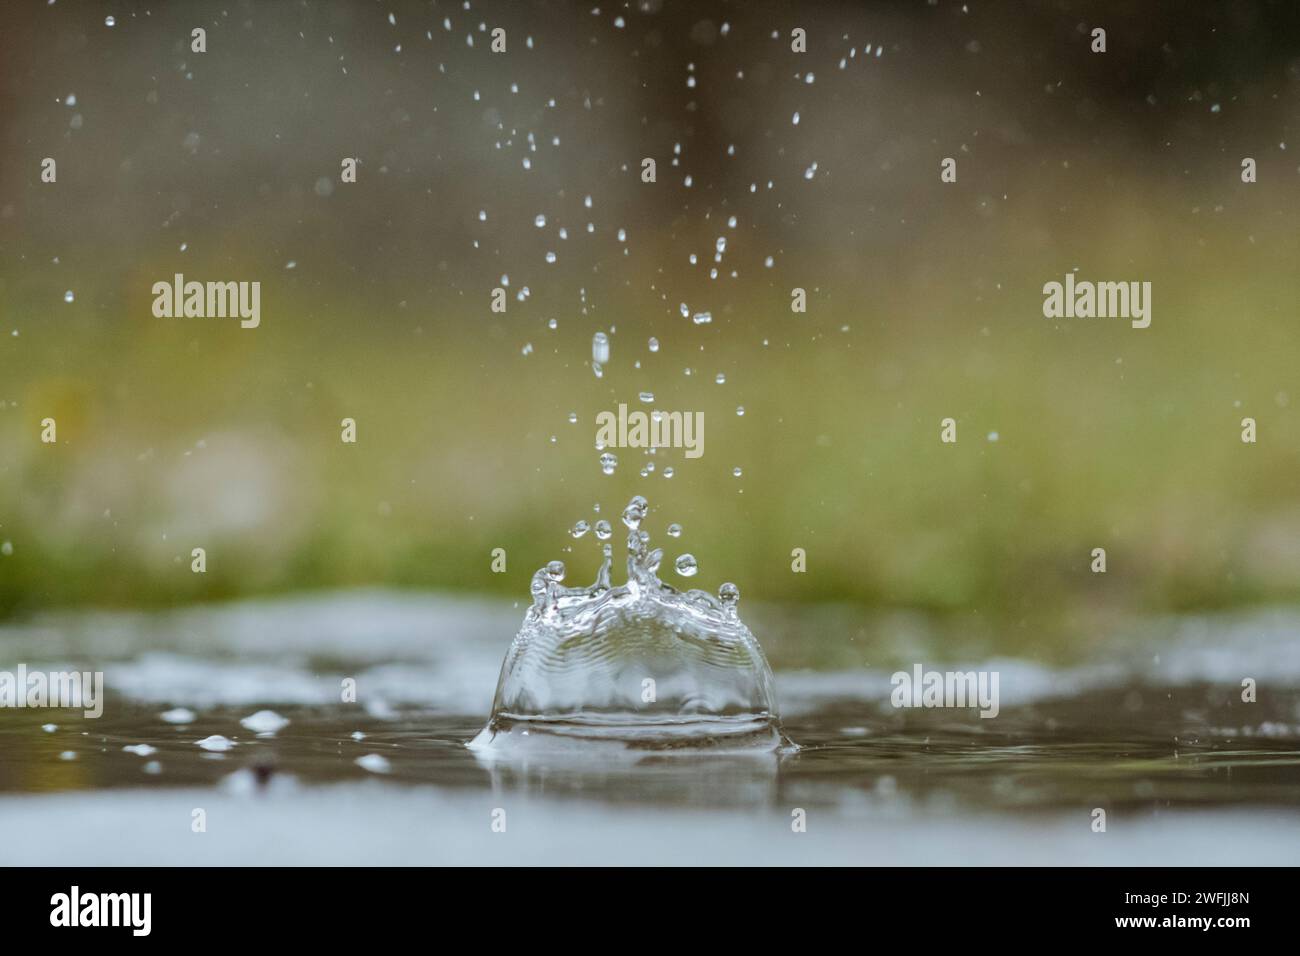 Gocce di poesia nell'istante : la grazia di una singola goccia d'acqua e i suoi schizzi, un'arte liquida congelata Banque D'Images